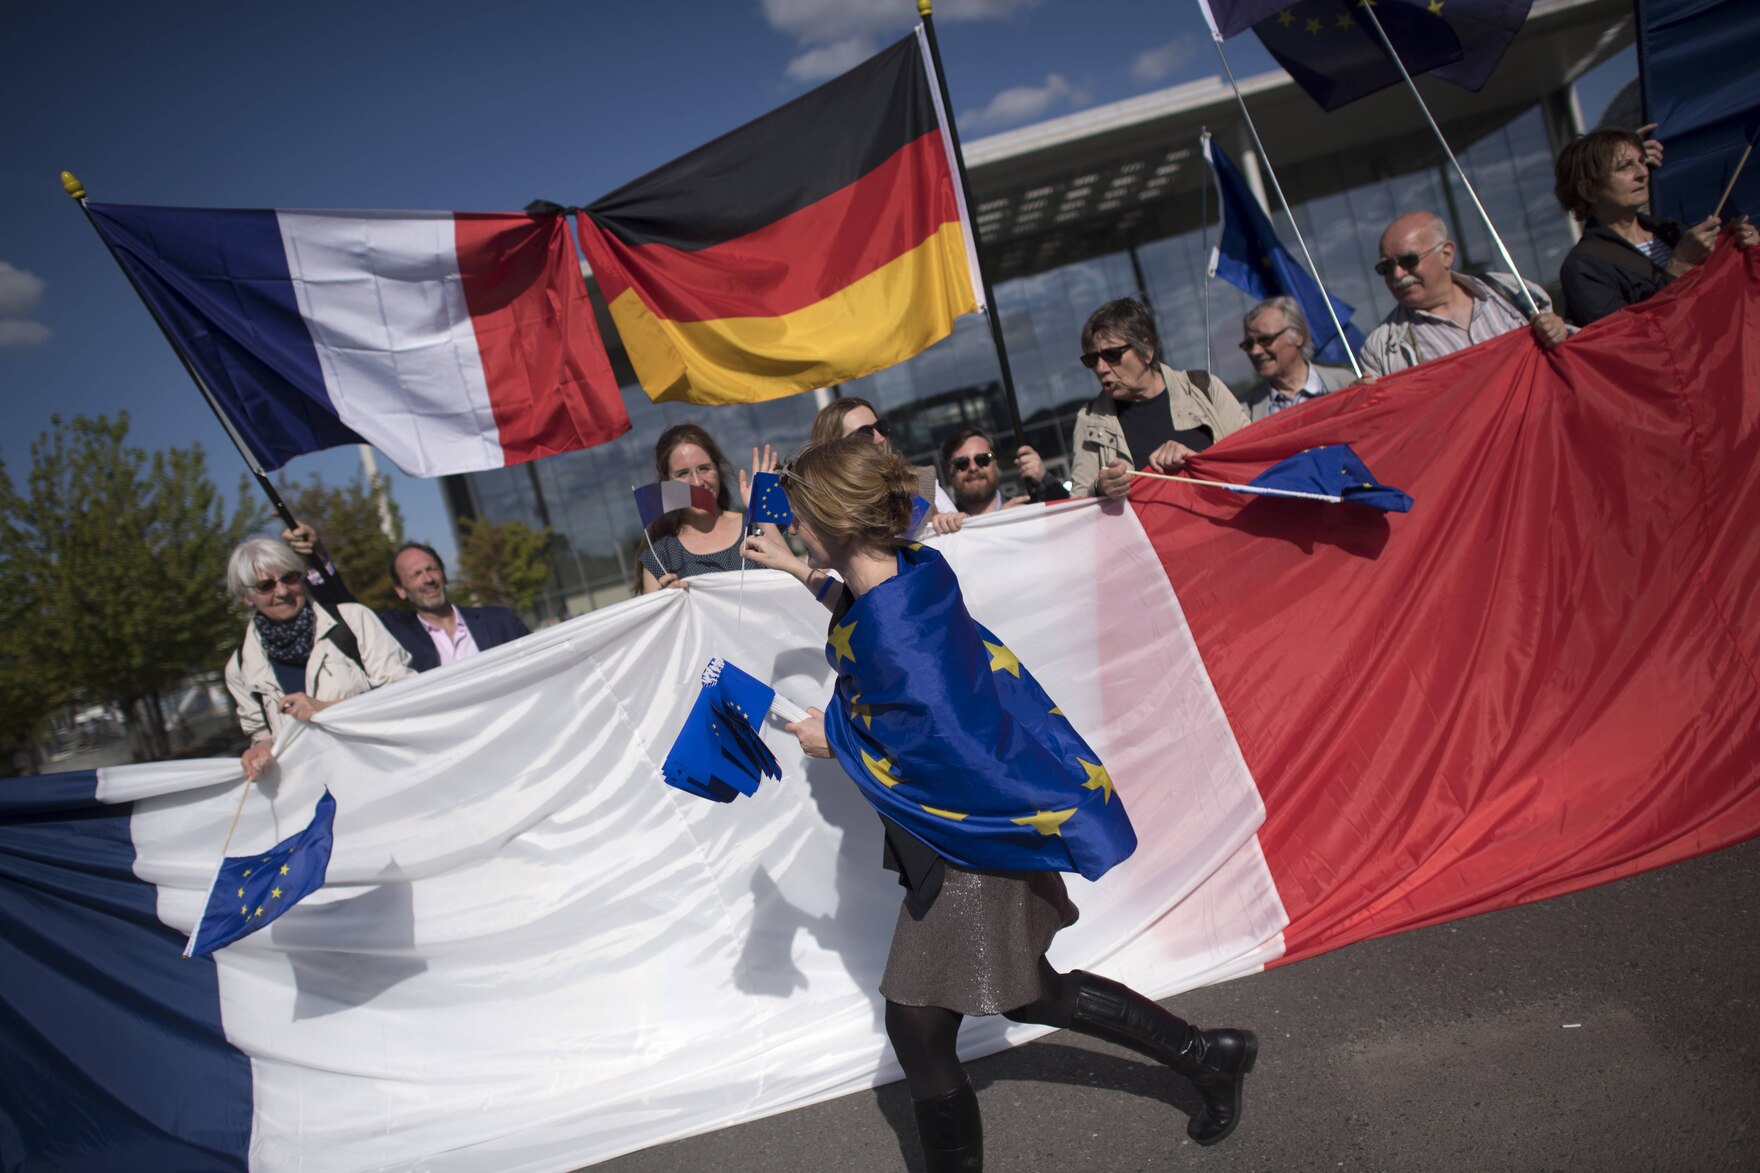 Menschen mit Fahnen in den Farben von Frankreich, Deutschland und der EU 